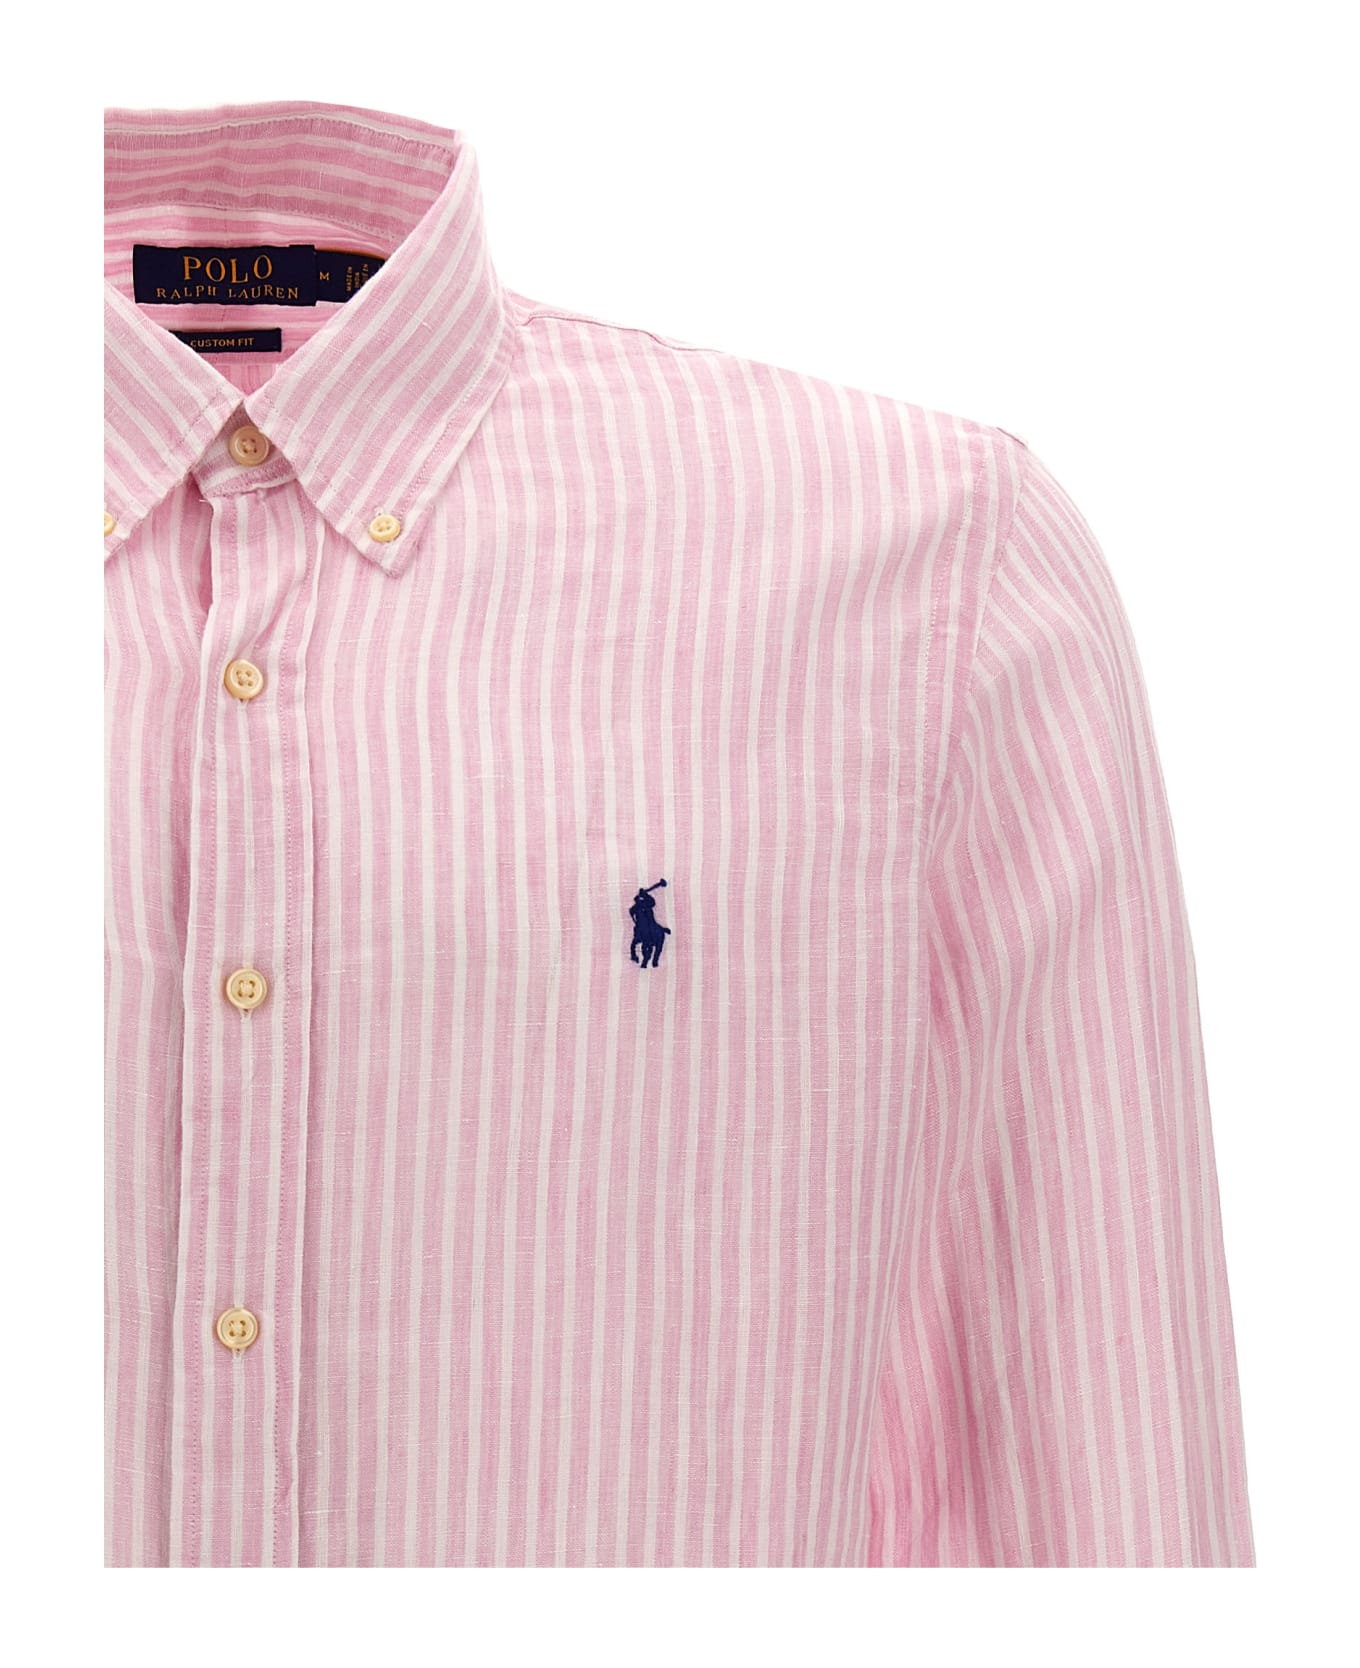 Polo Ralph Lauren Striped Linen Shirt - LIGHT PINK